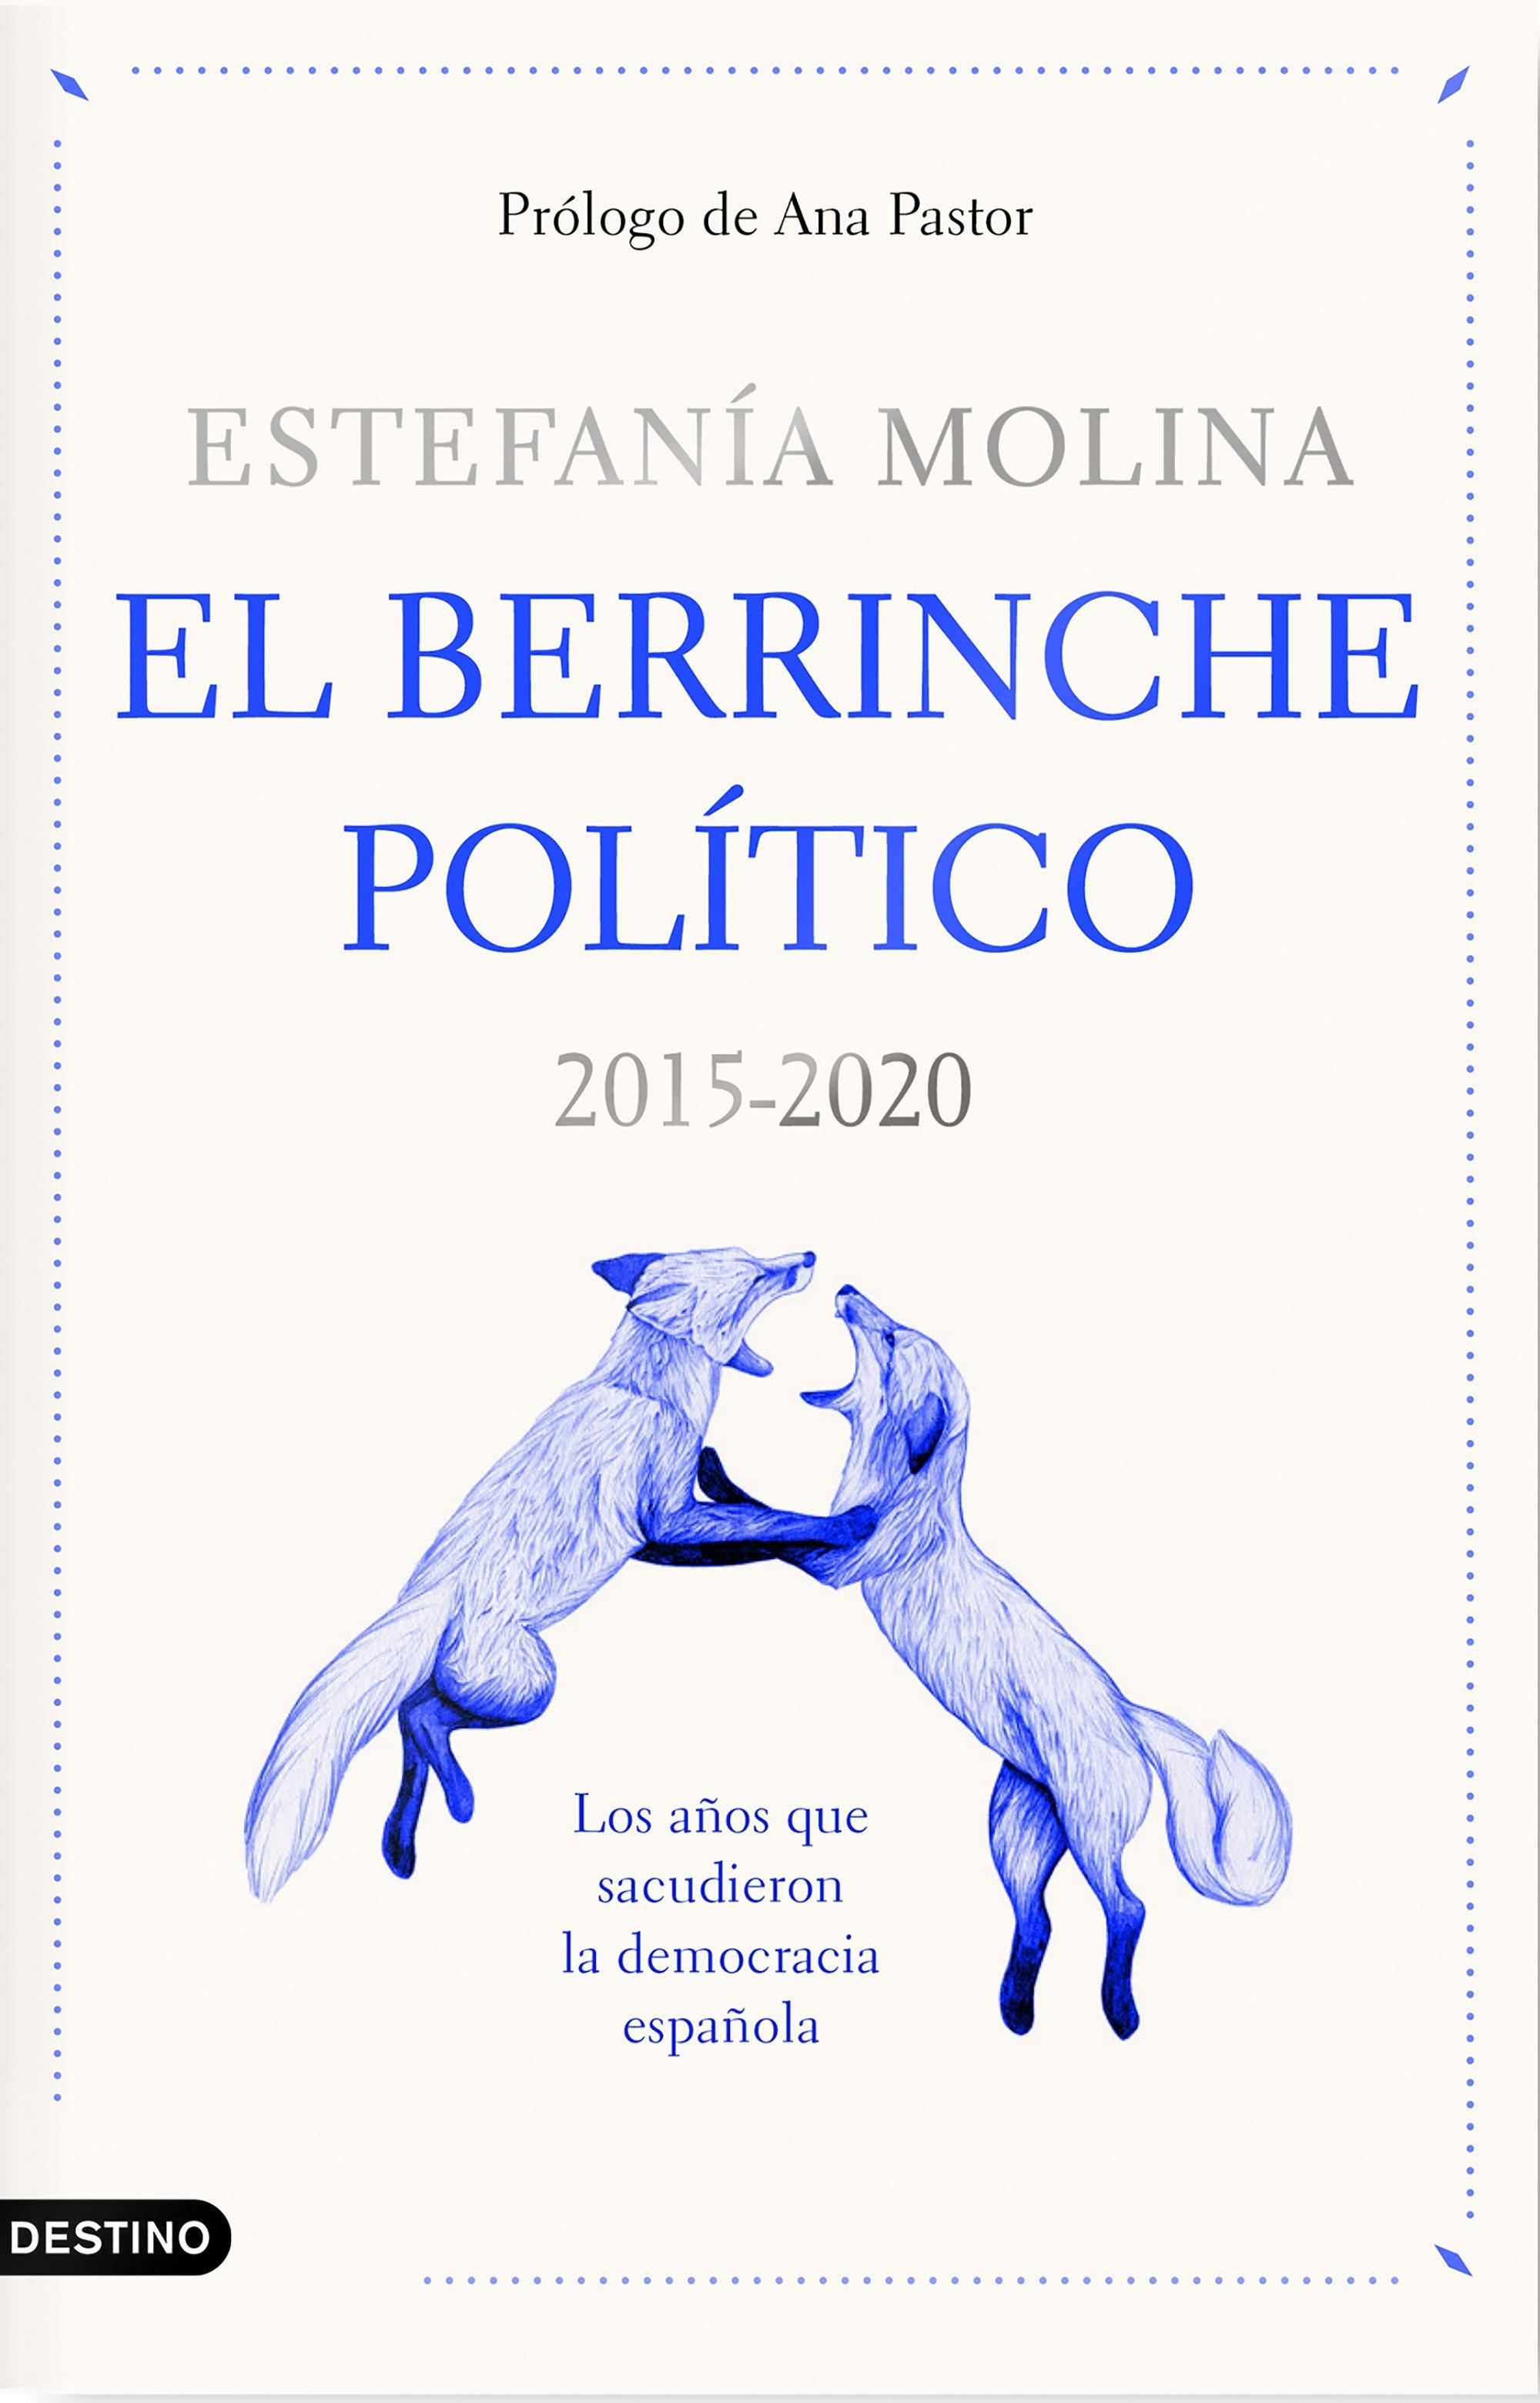 El Berrinche Político "2015-2020 los Años que Sacudieron la Democracia Española". 